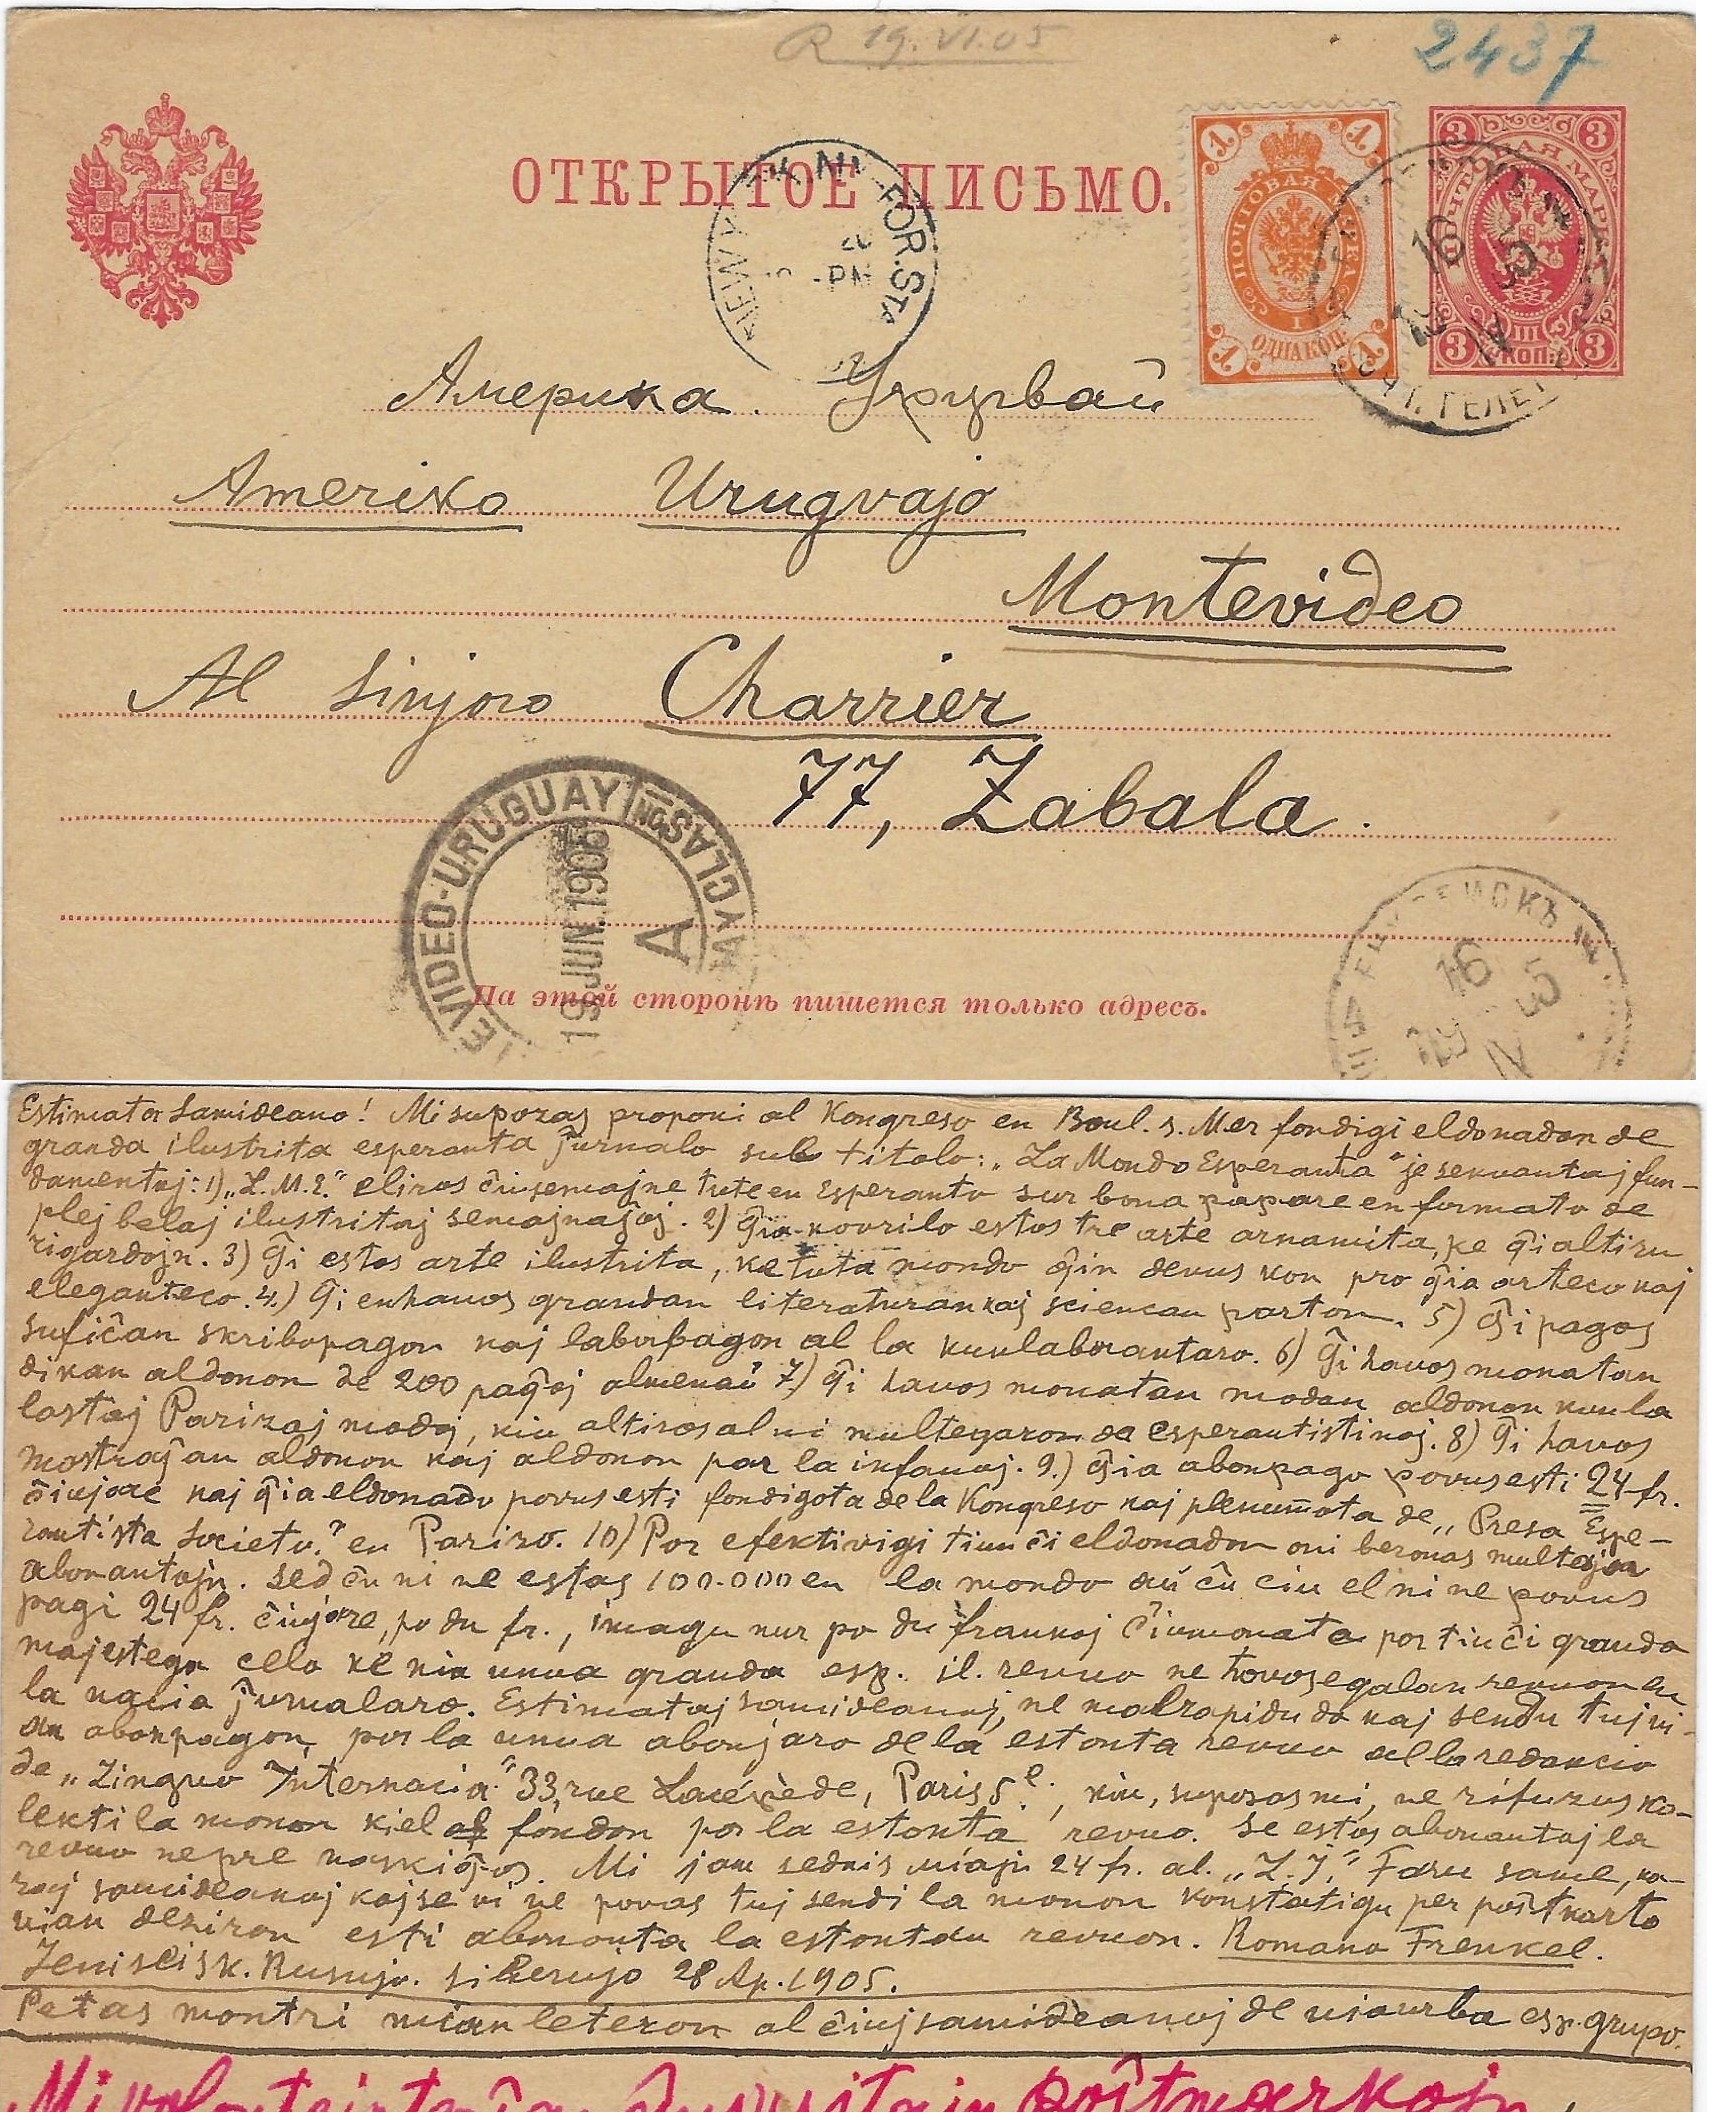 Russia Postal History - Unusual Destinations. Unusual destinations Scott 1905 